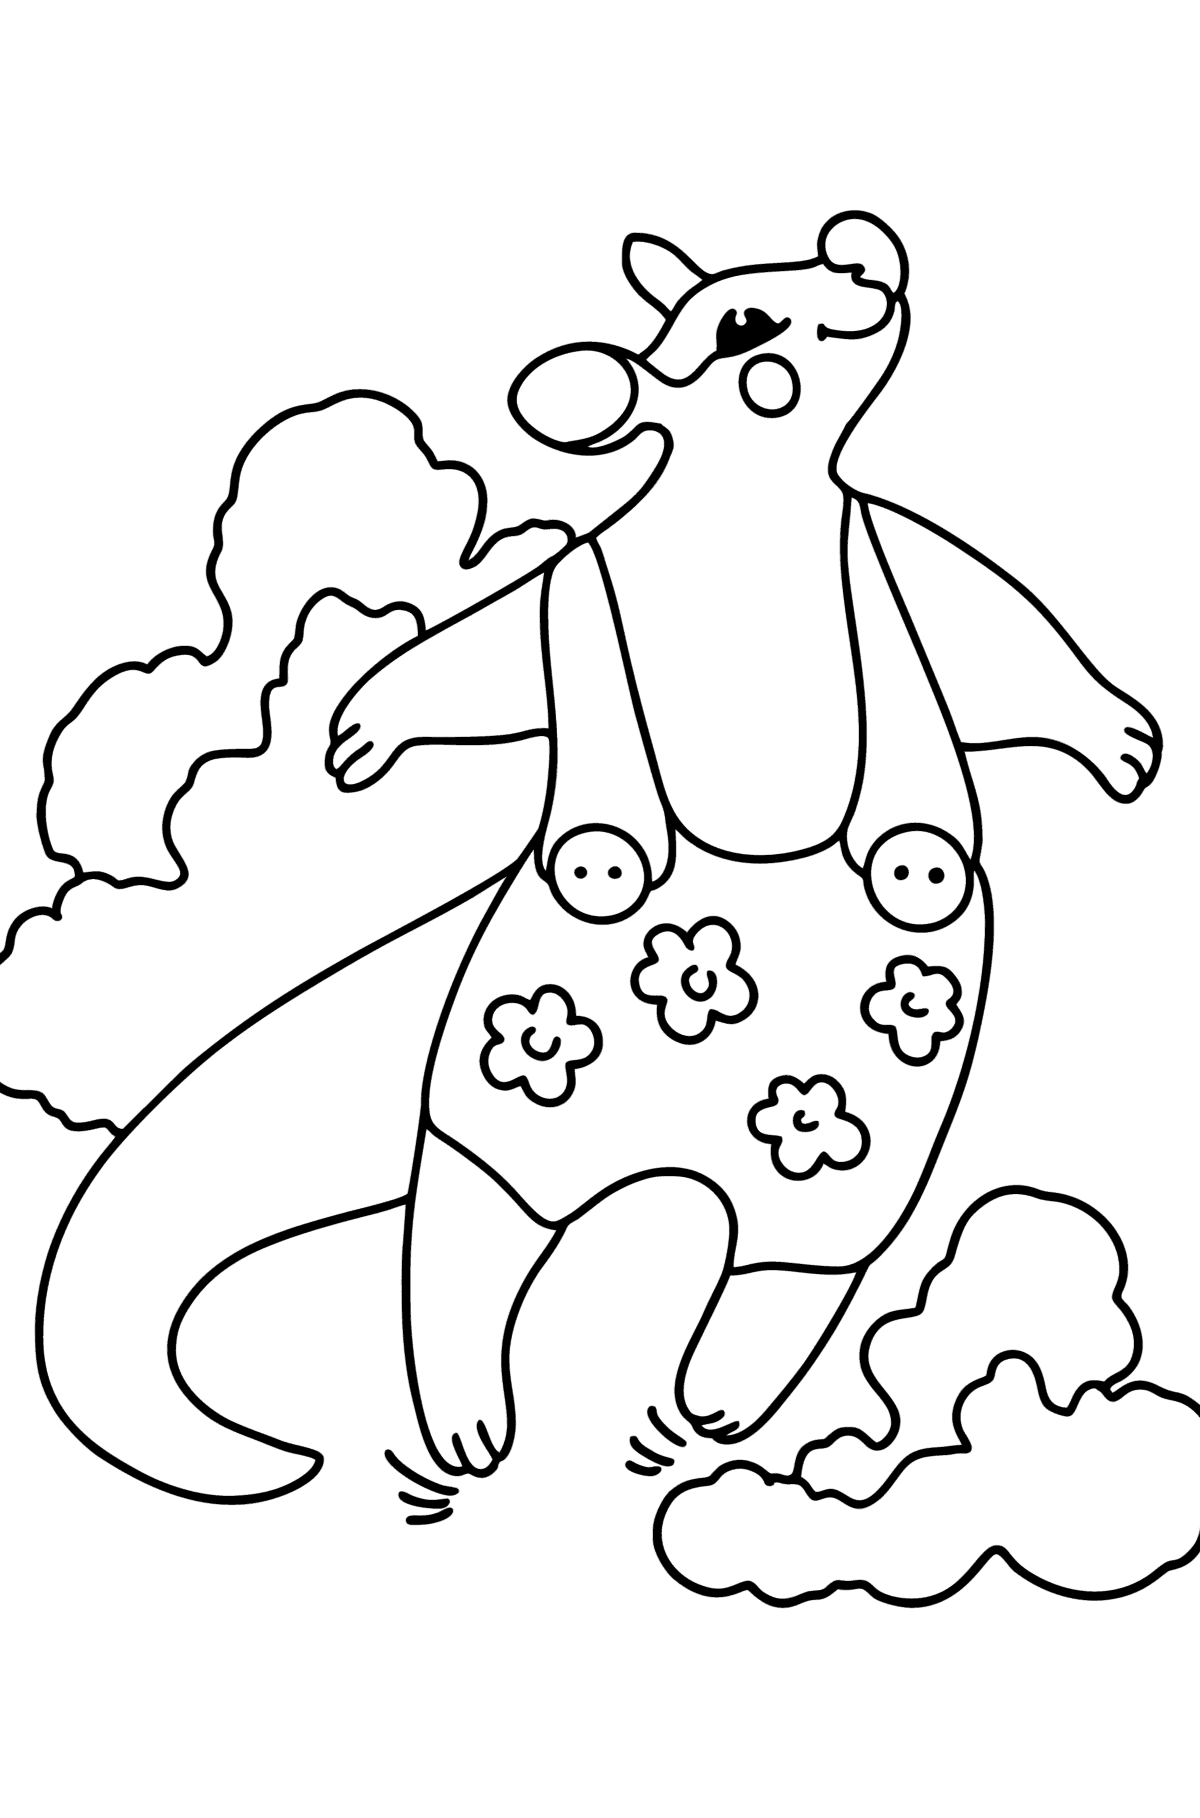 Tegning til fargelegging tegneserie kenguru hopping - Tegninger til fargelegging for barn